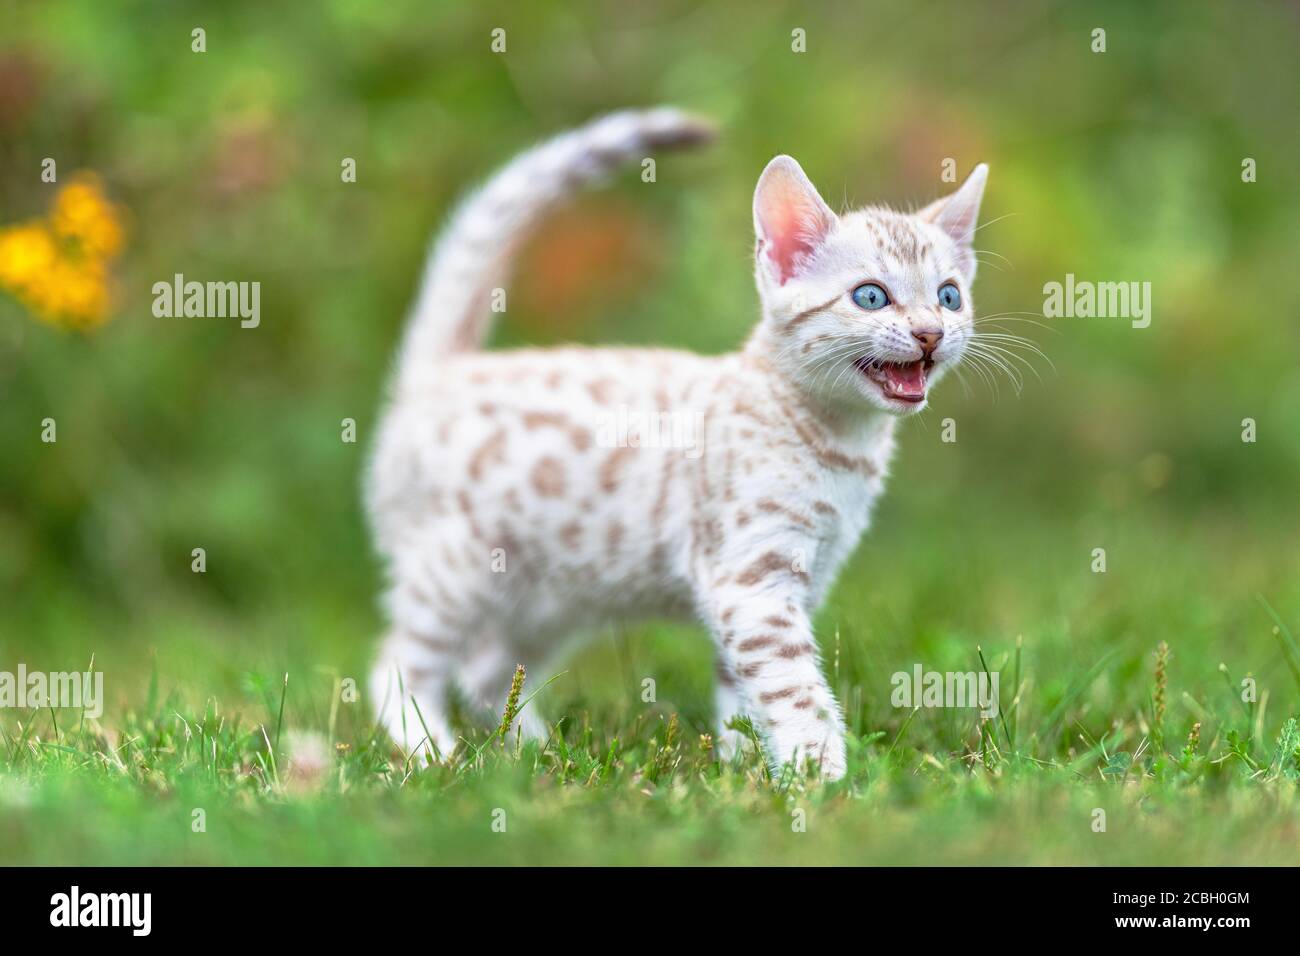 Ein süßes weißes Snow Bengal Kätzchen im Freien, das im Gras läuft. Die  neugierige kleine Katze ist 7 Wochen alt, und sie hat ihren Mund geöffnet,  mäht. Mit einigen Stockfotografie - Alamy